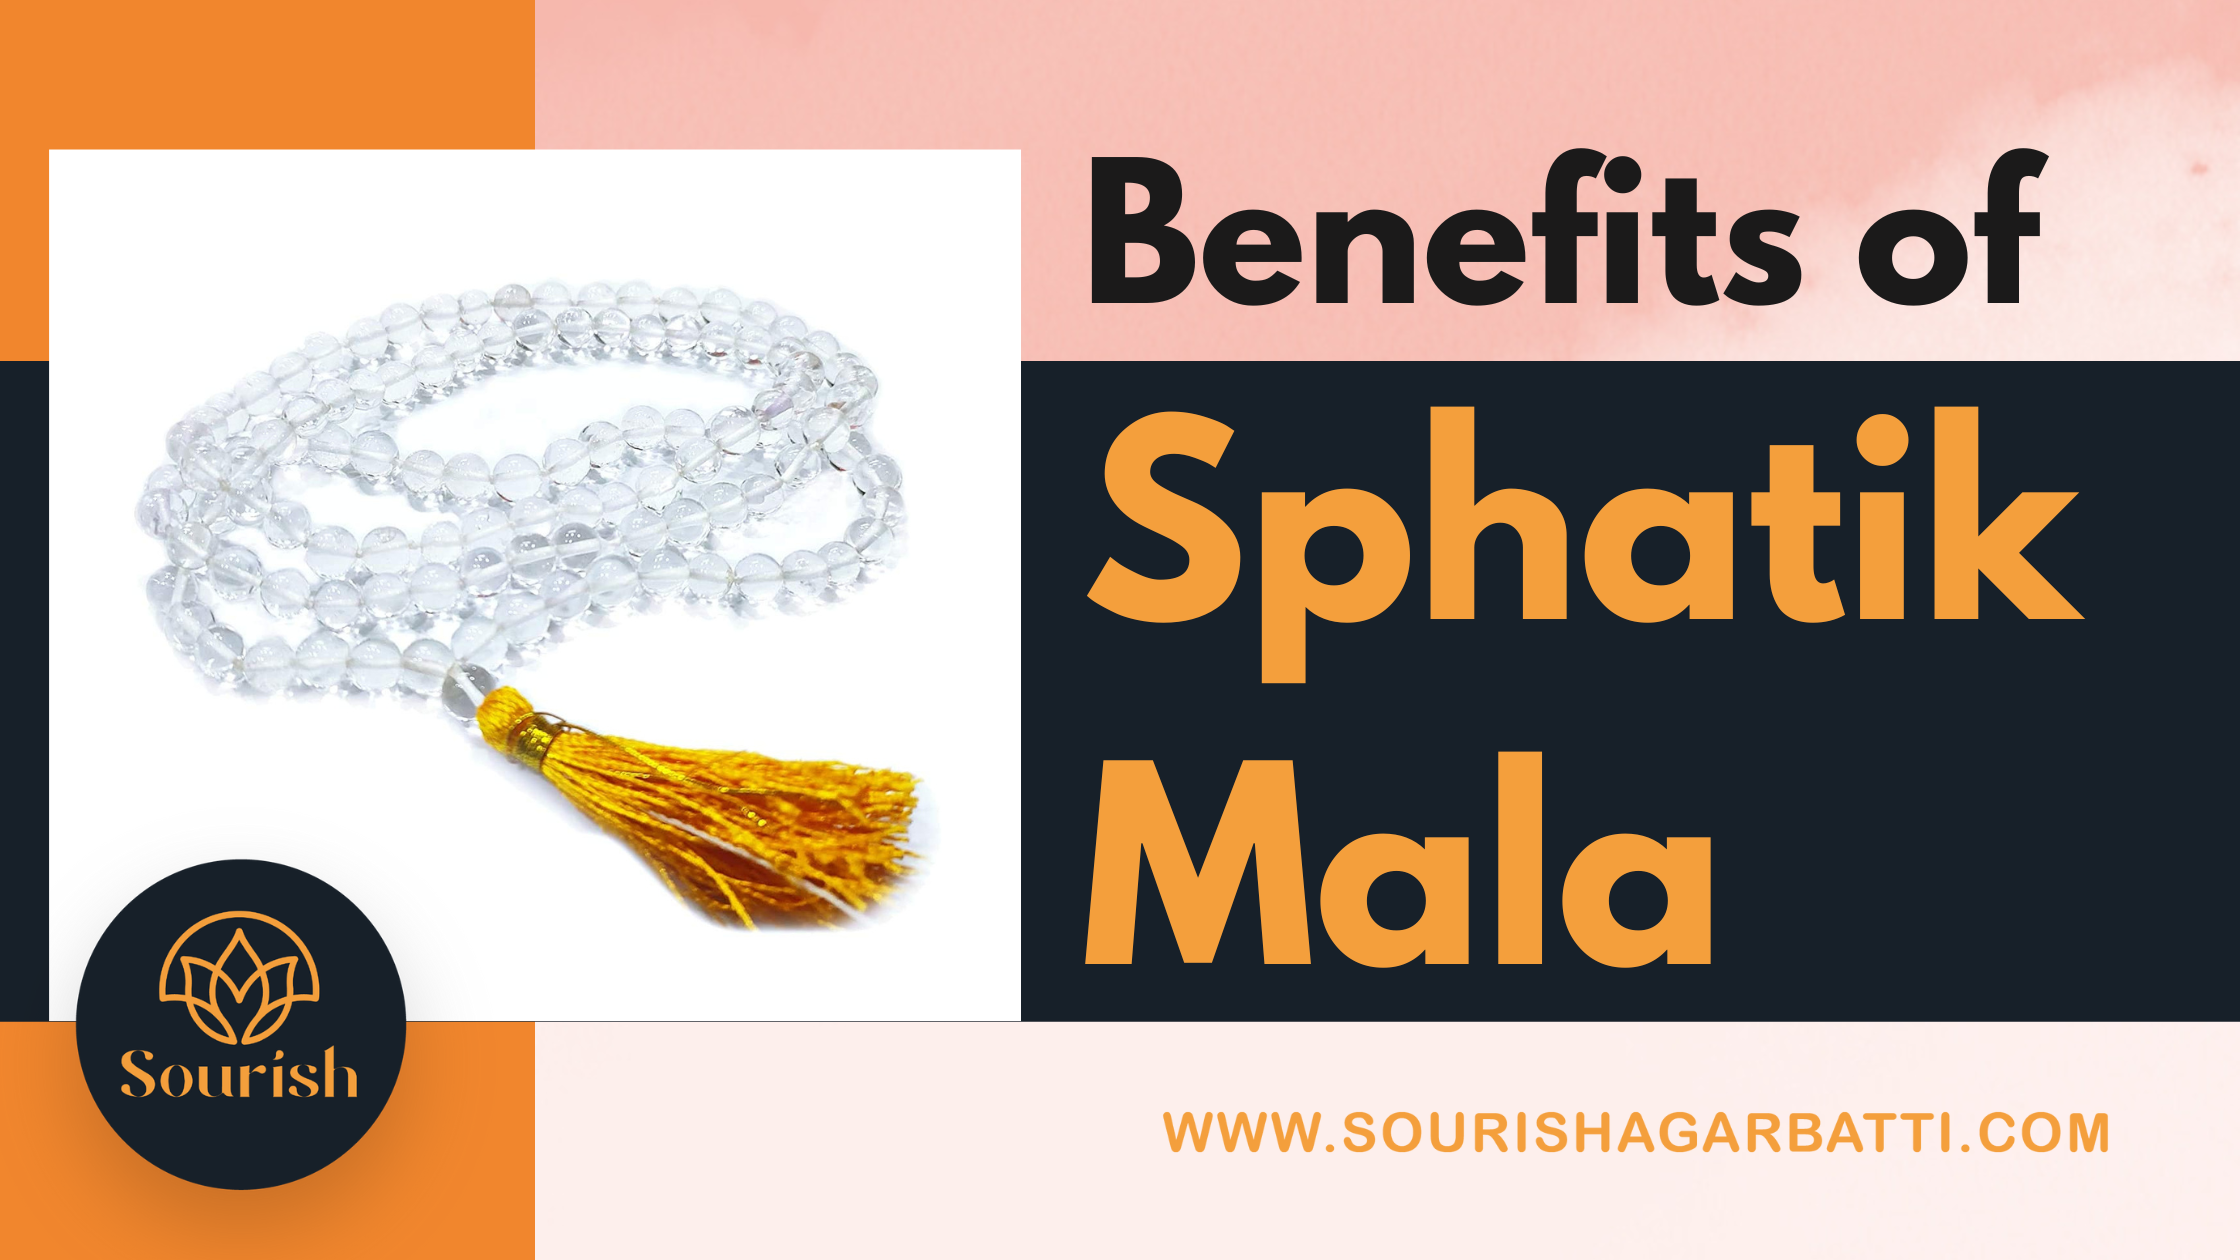 Benefits of sphatik mala | how to use Sphatik Mala